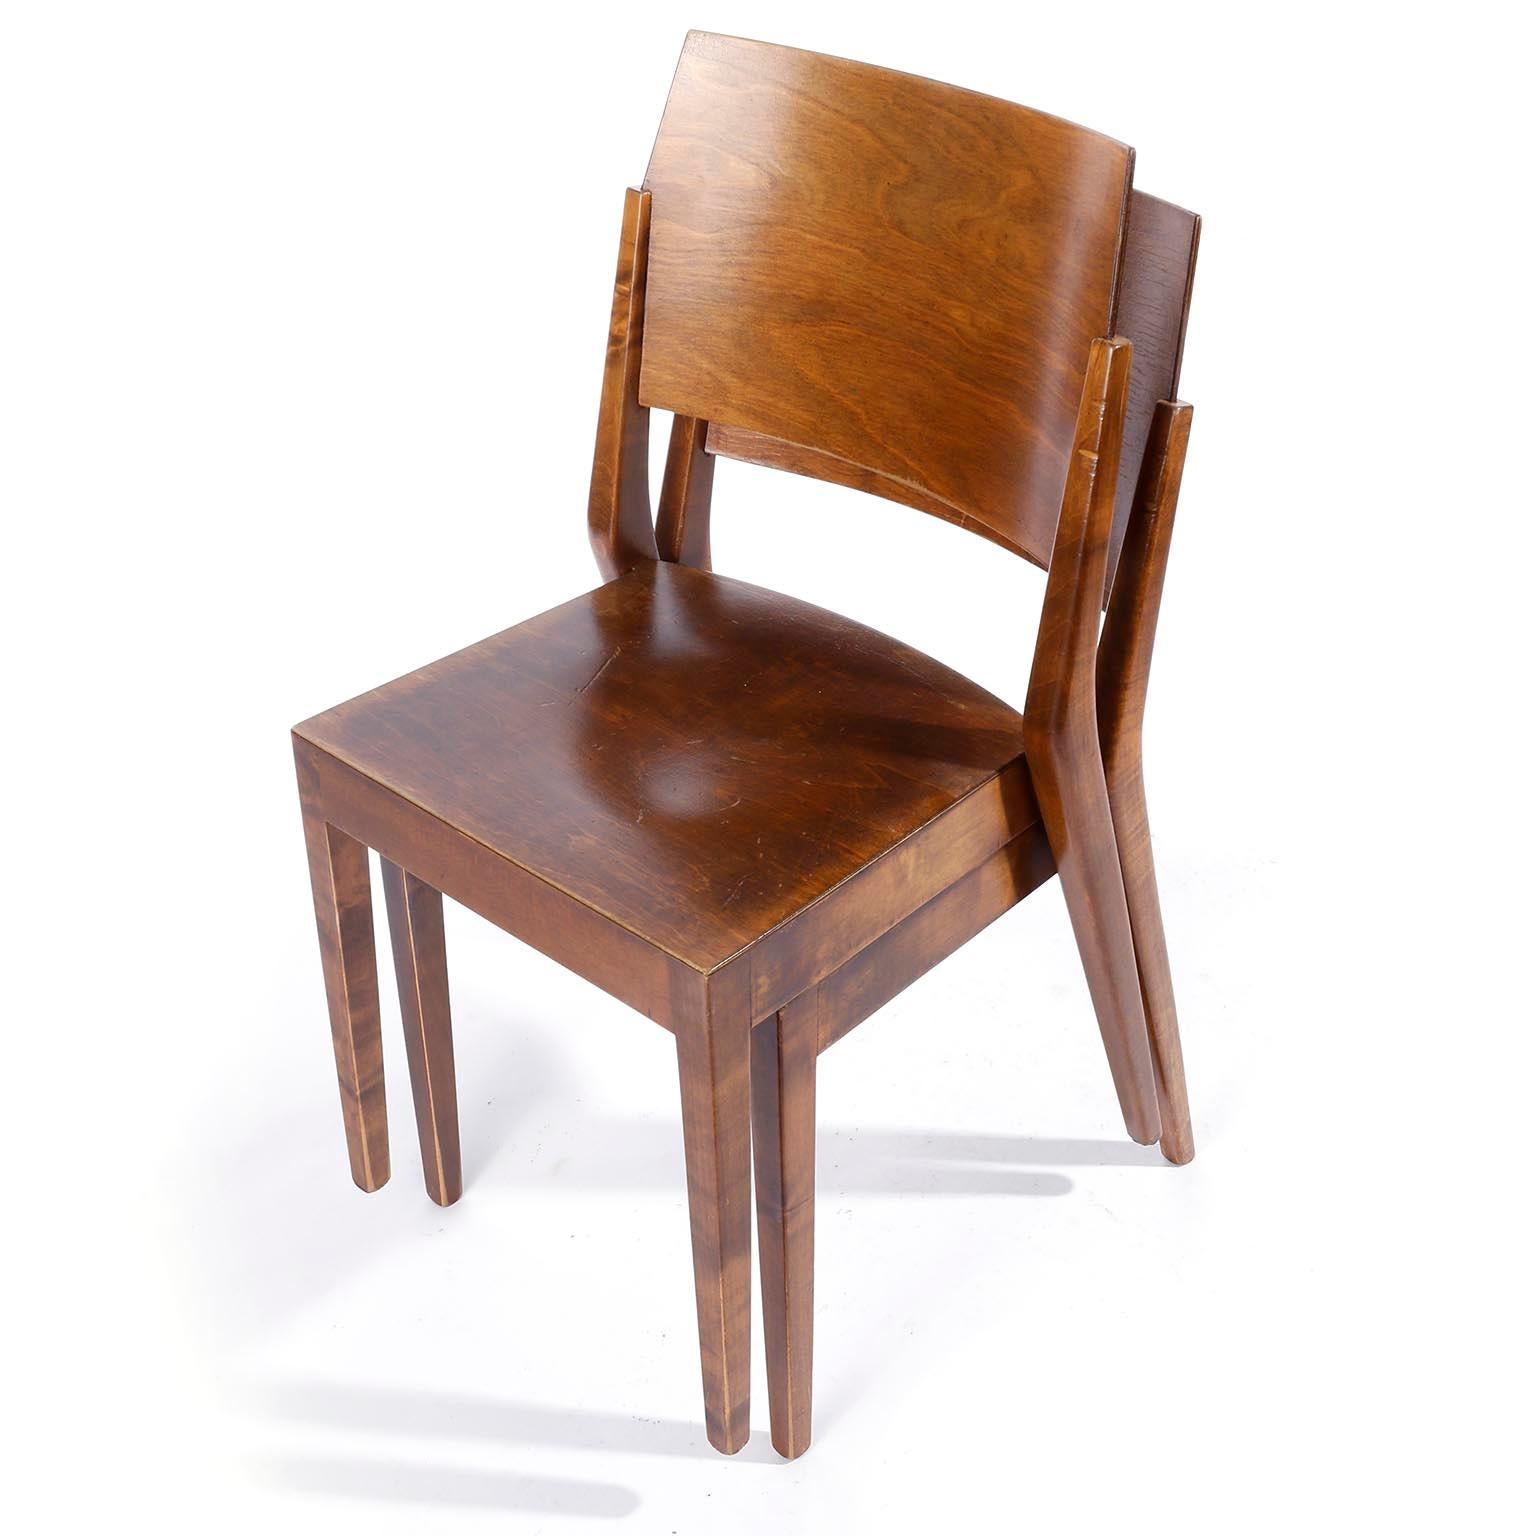 Rare ensemble de deux chaises empilables viennoises en bois teinté brun, conçues par l'architecte autrichien Prof. Karl Schwanzer et fabriquées par Thonet dans les années 1950.
Cette chaise a été conçue par Karl Schwanzer pour la